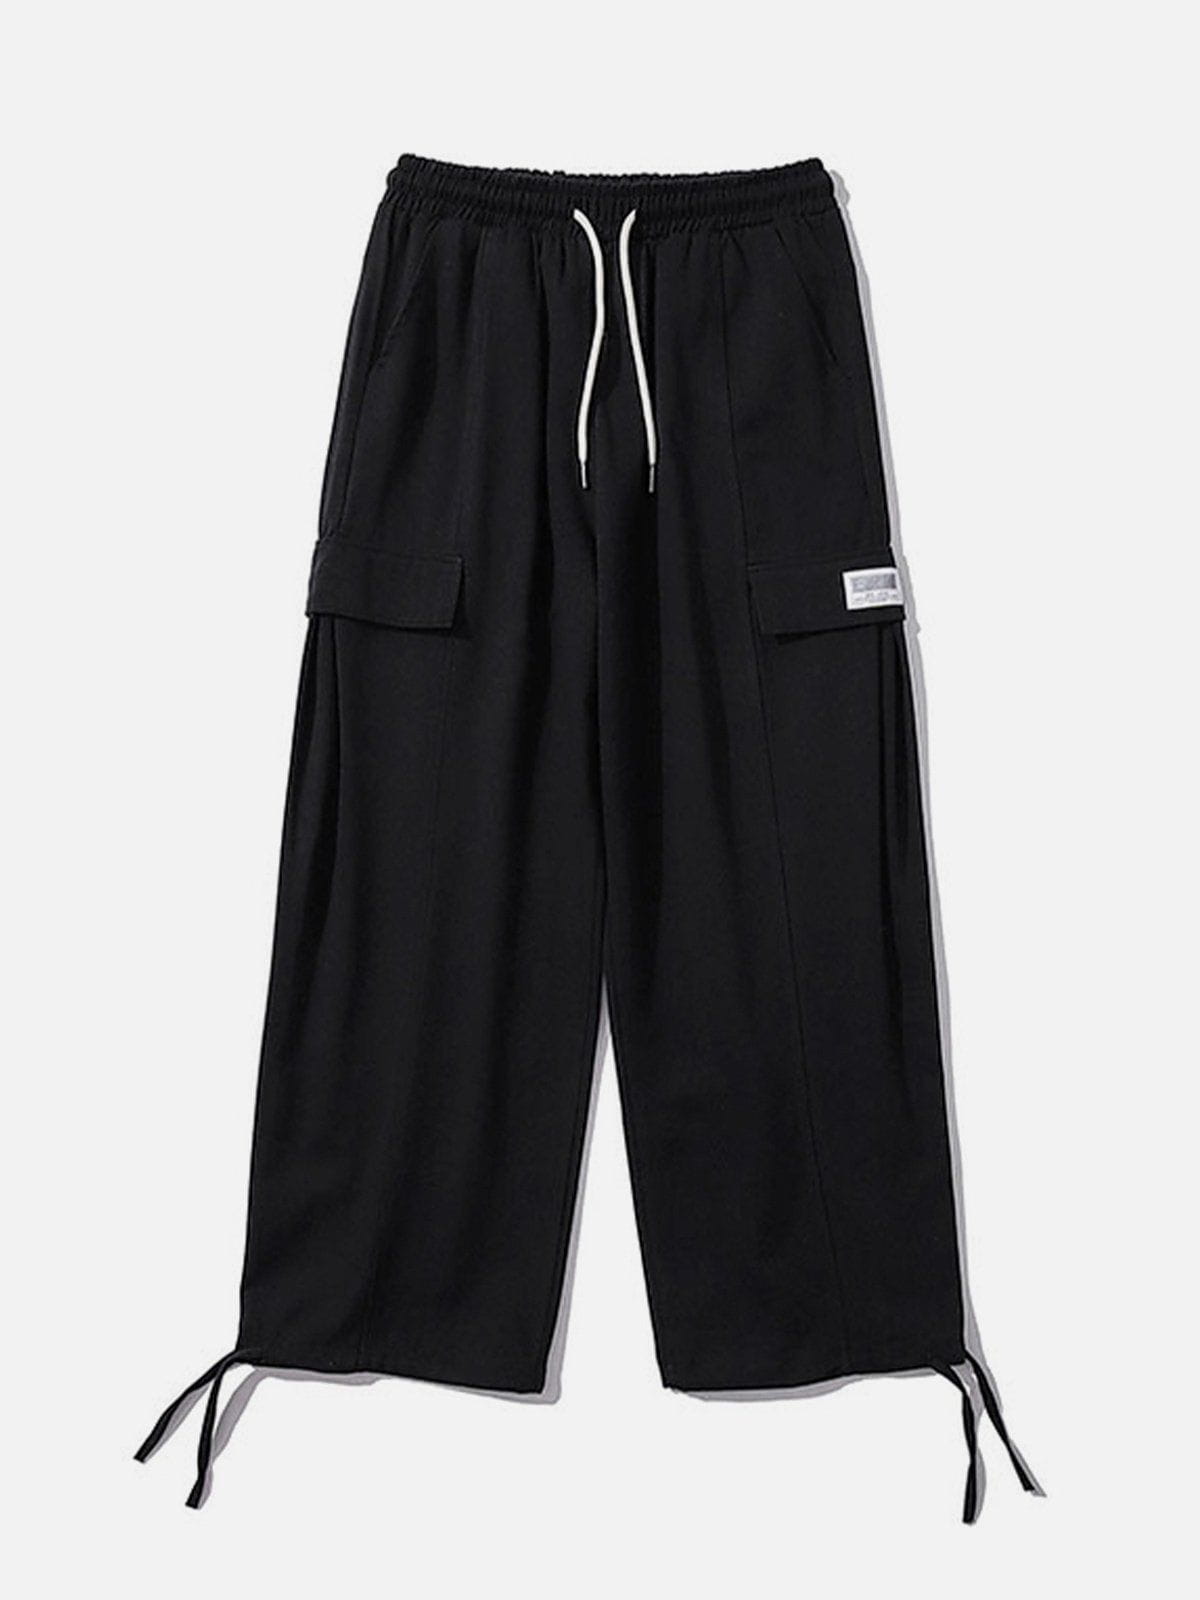 Sneakerland® - Large Pocket Drawstring Cargo Pants